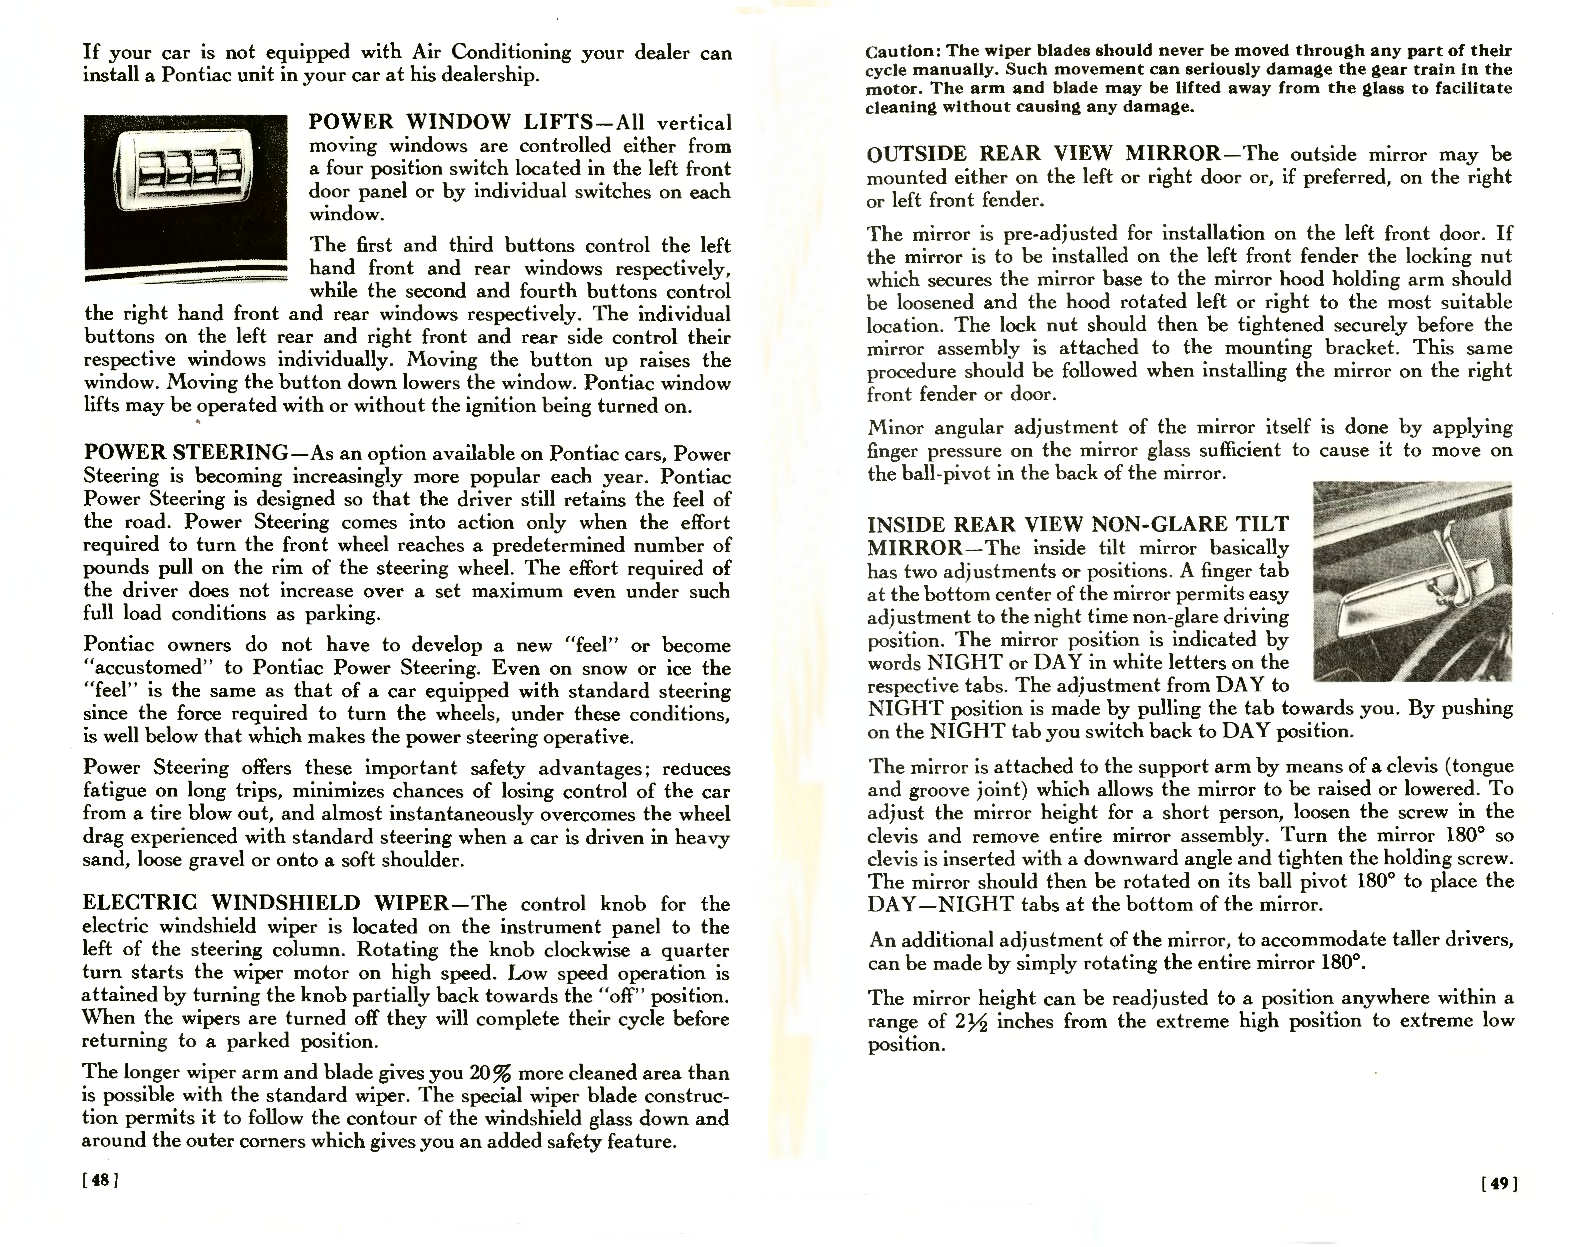 n_1957 Pontiac Owners Guide-48-49.jpg